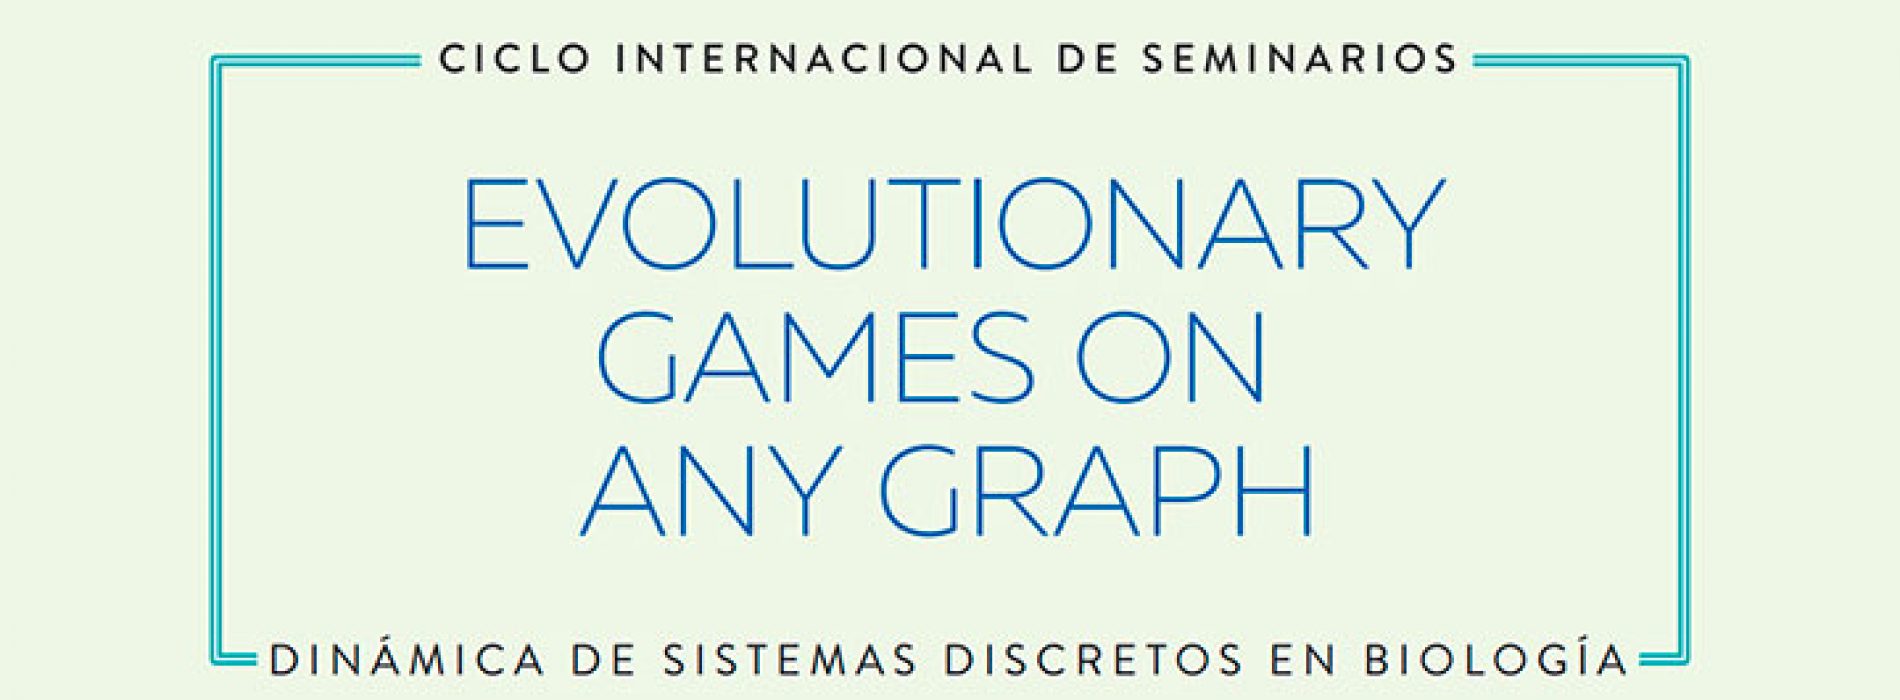 Seminario 11 de Agosto, Dr. Benjamin Allen “Evolutionary games on Any Graph”